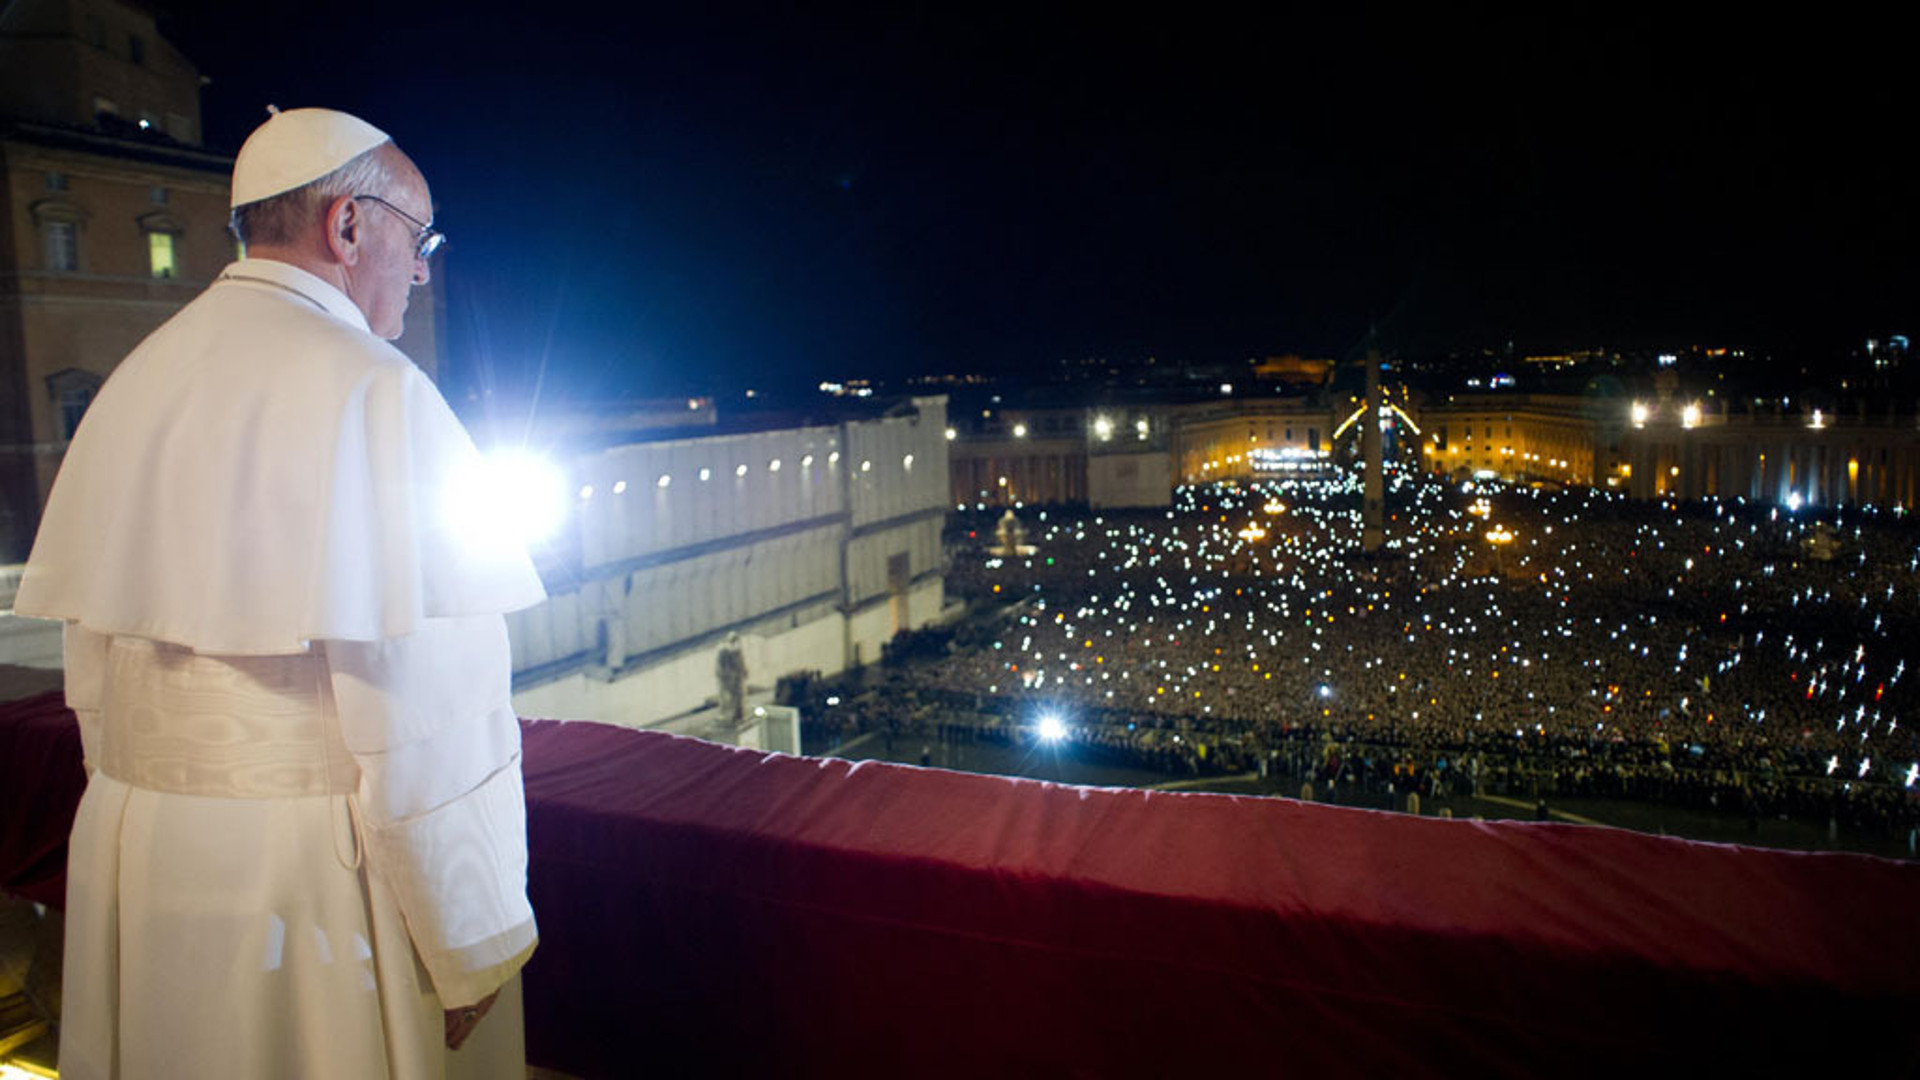 Papst Franziskus am 13. März 2013 nach seiner Wahl auf der Loggia des Petersdomes.